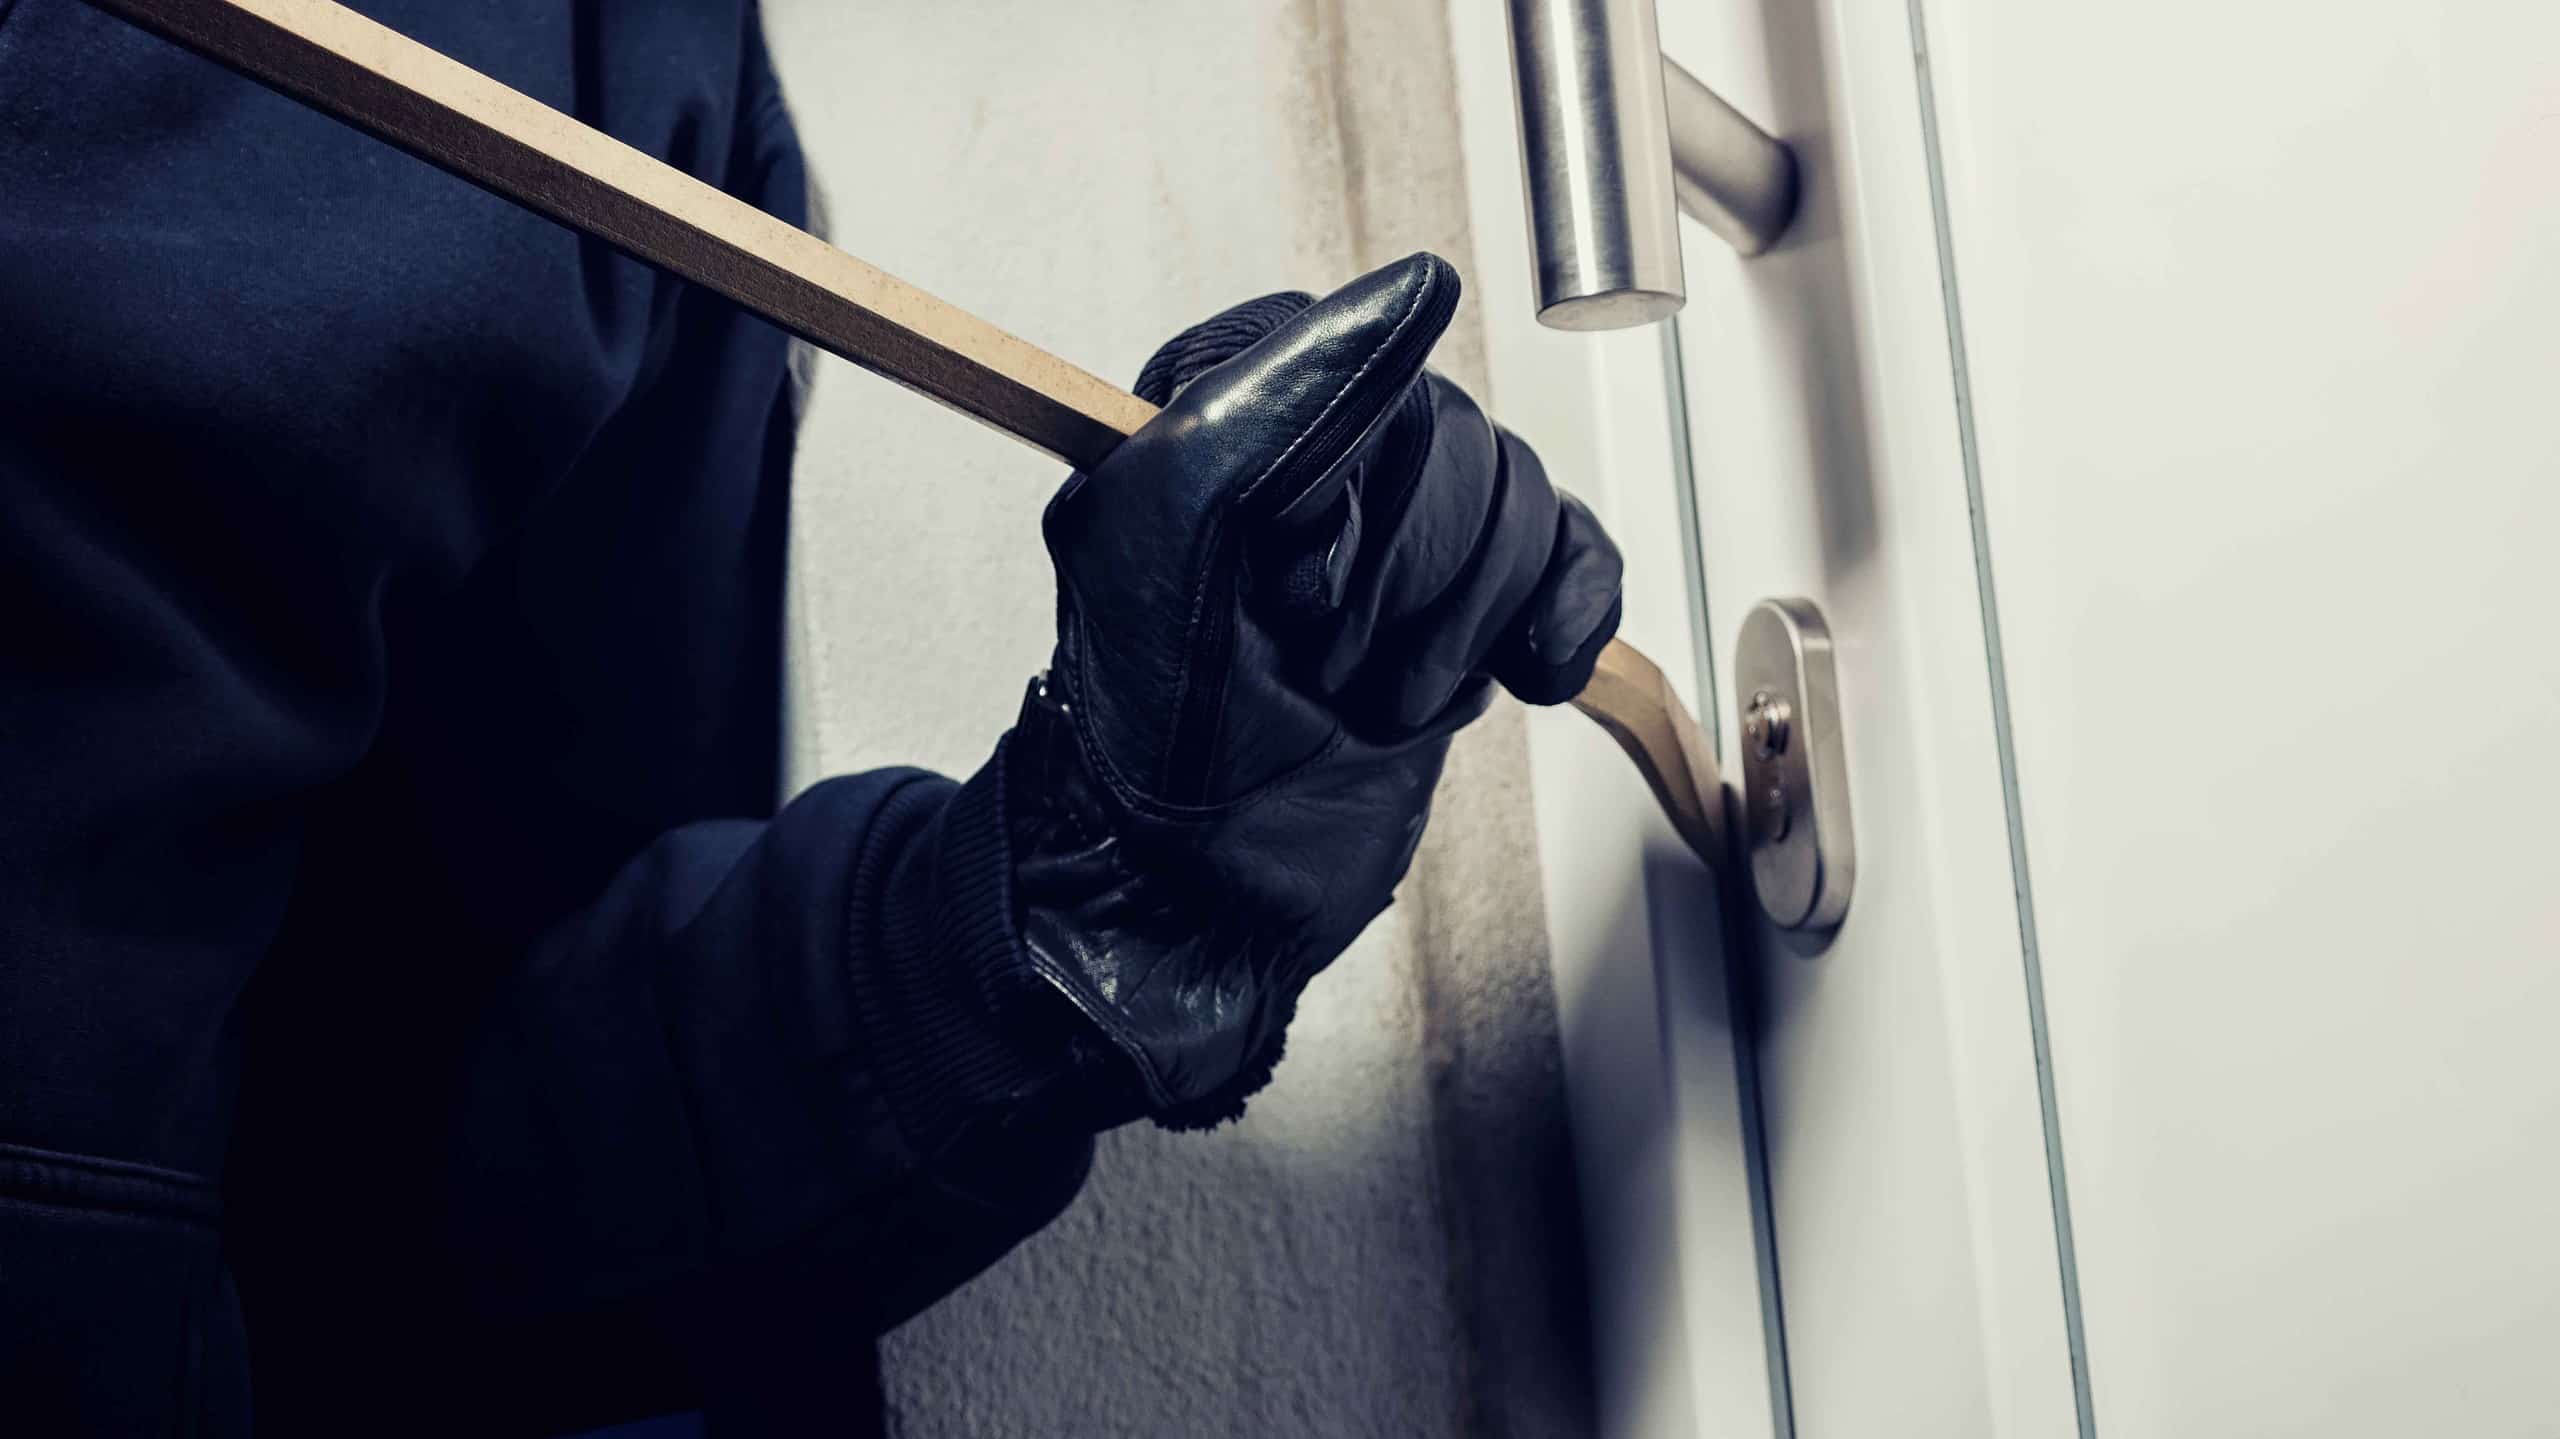 burglar-using-crowbar-break-home-door-night